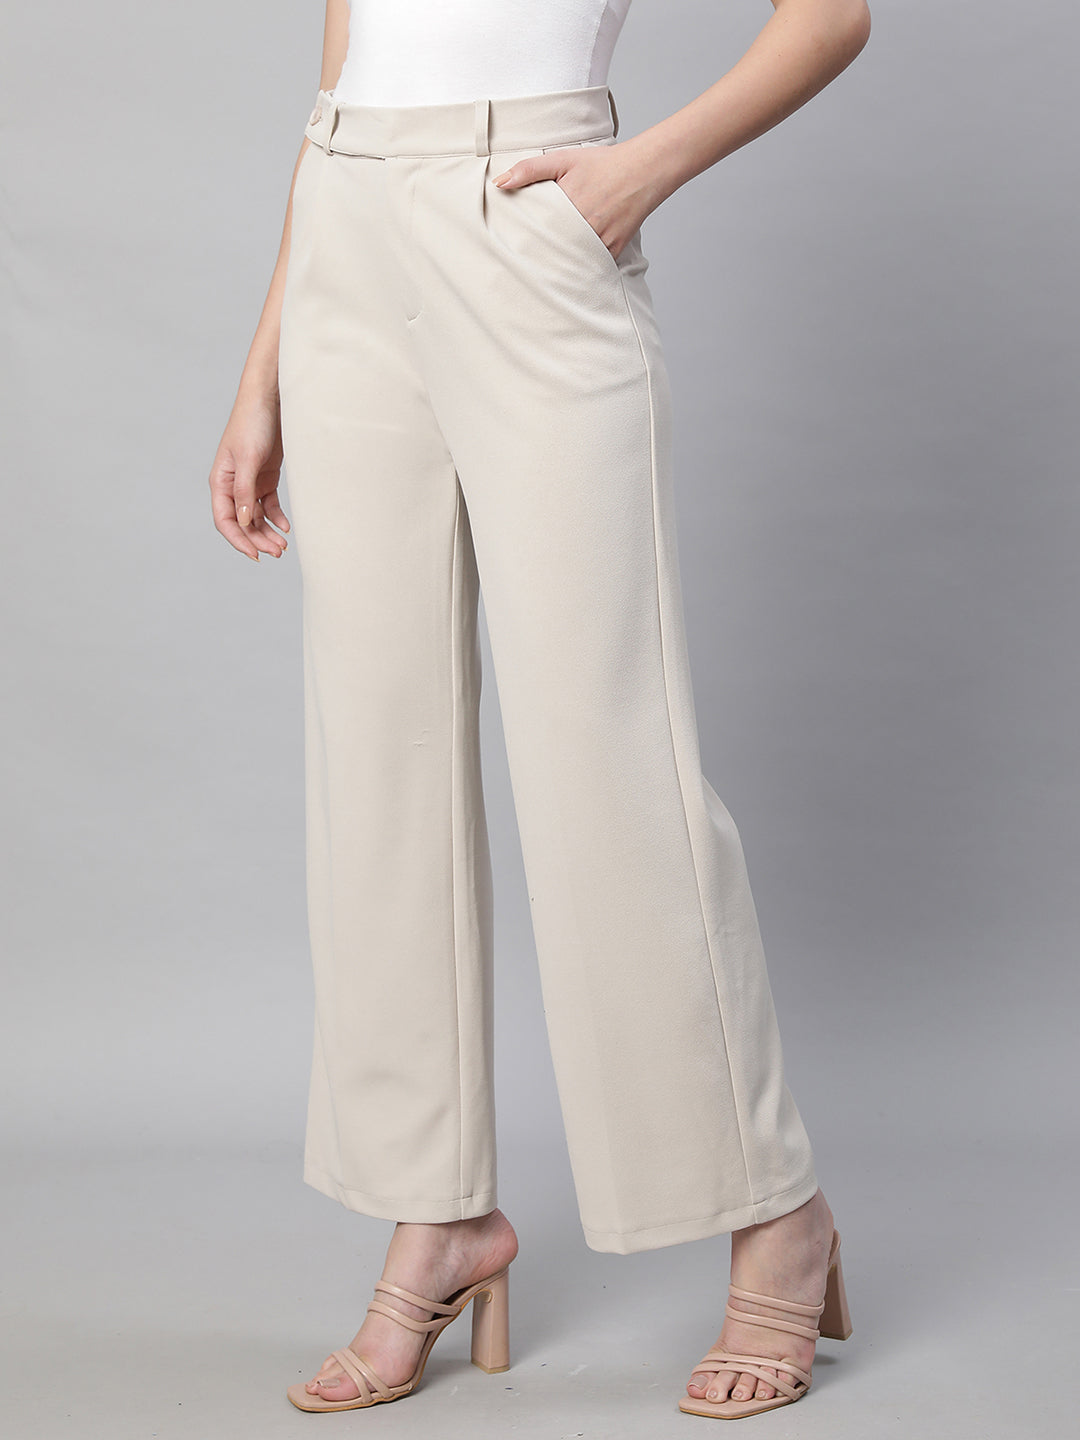 White Formal Pants For Ladies | forum.iktva.sa